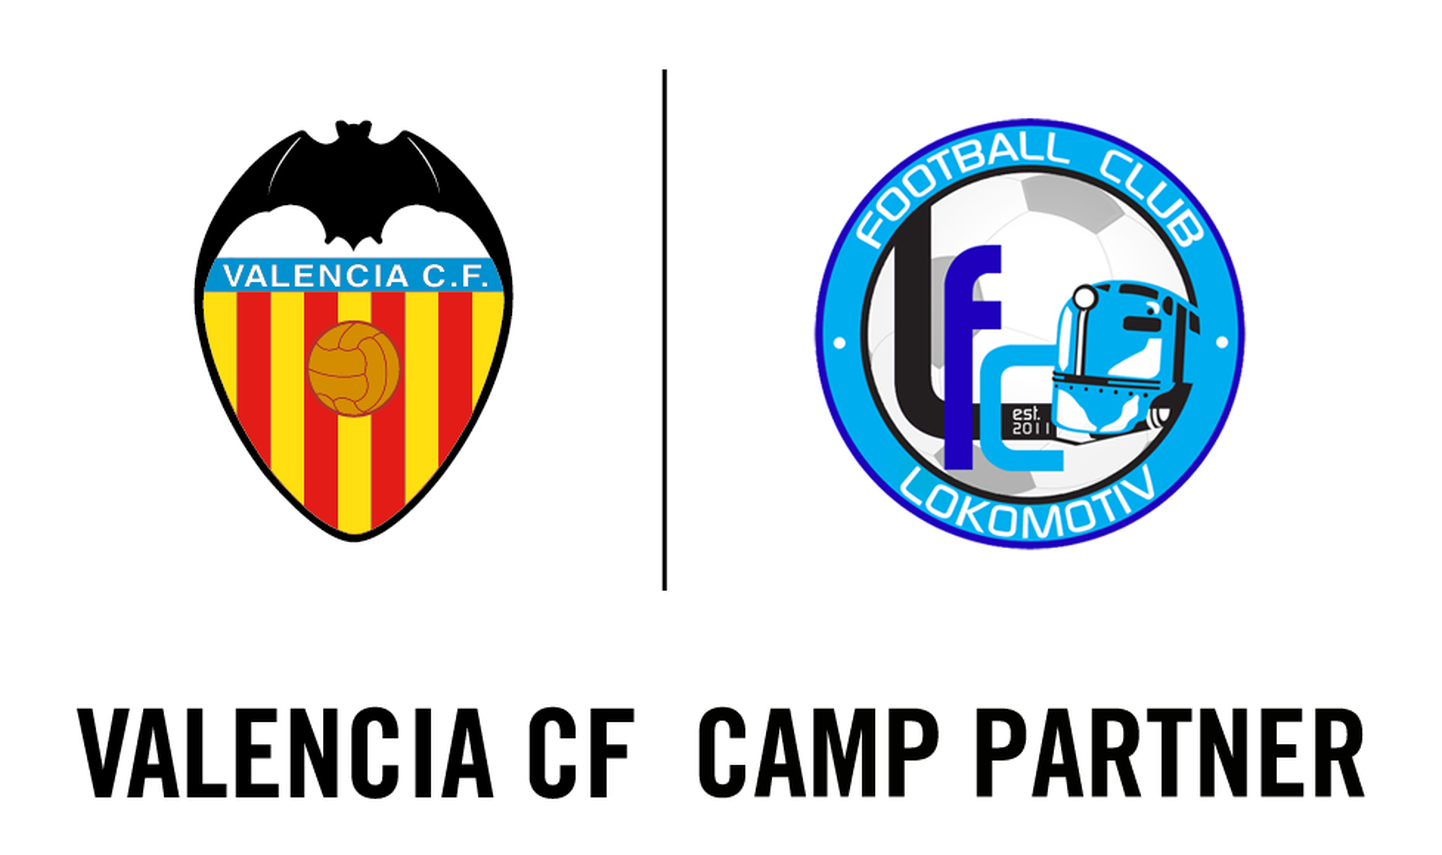 Йыхвиский футбольный клуб «Локомотив» совместно с Футбольной академией испанского футбольного клуба «Валенсия» проведут пятидневный детский футбольный лагерь.